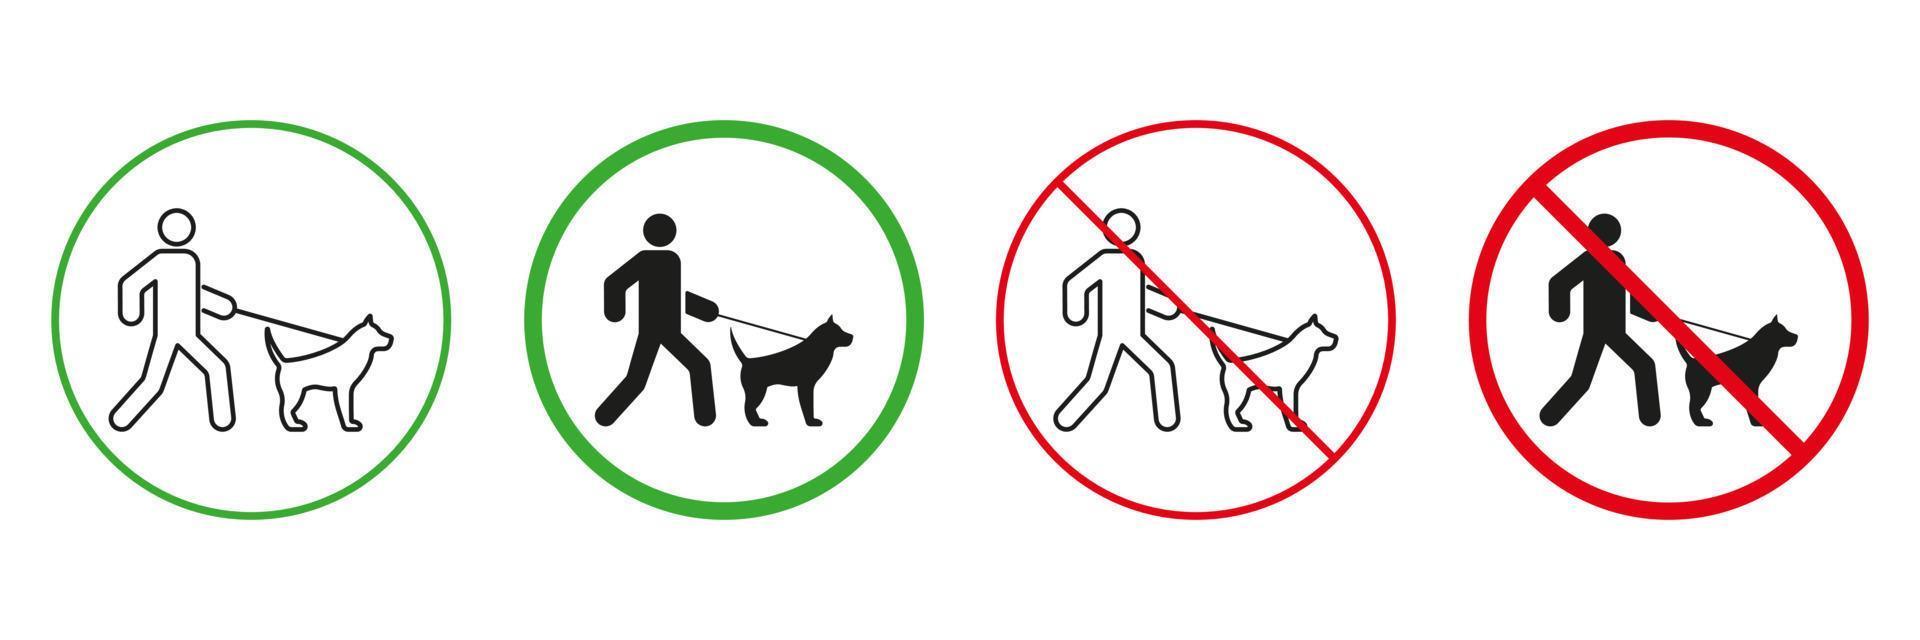 zona para caminando perro rojo y verde advertencia señales. masculino y mascota en Correa caminar línea y silueta íconos colocar. permitido y prohibido caminar animal zona pictograma. aislado vector ilustración.